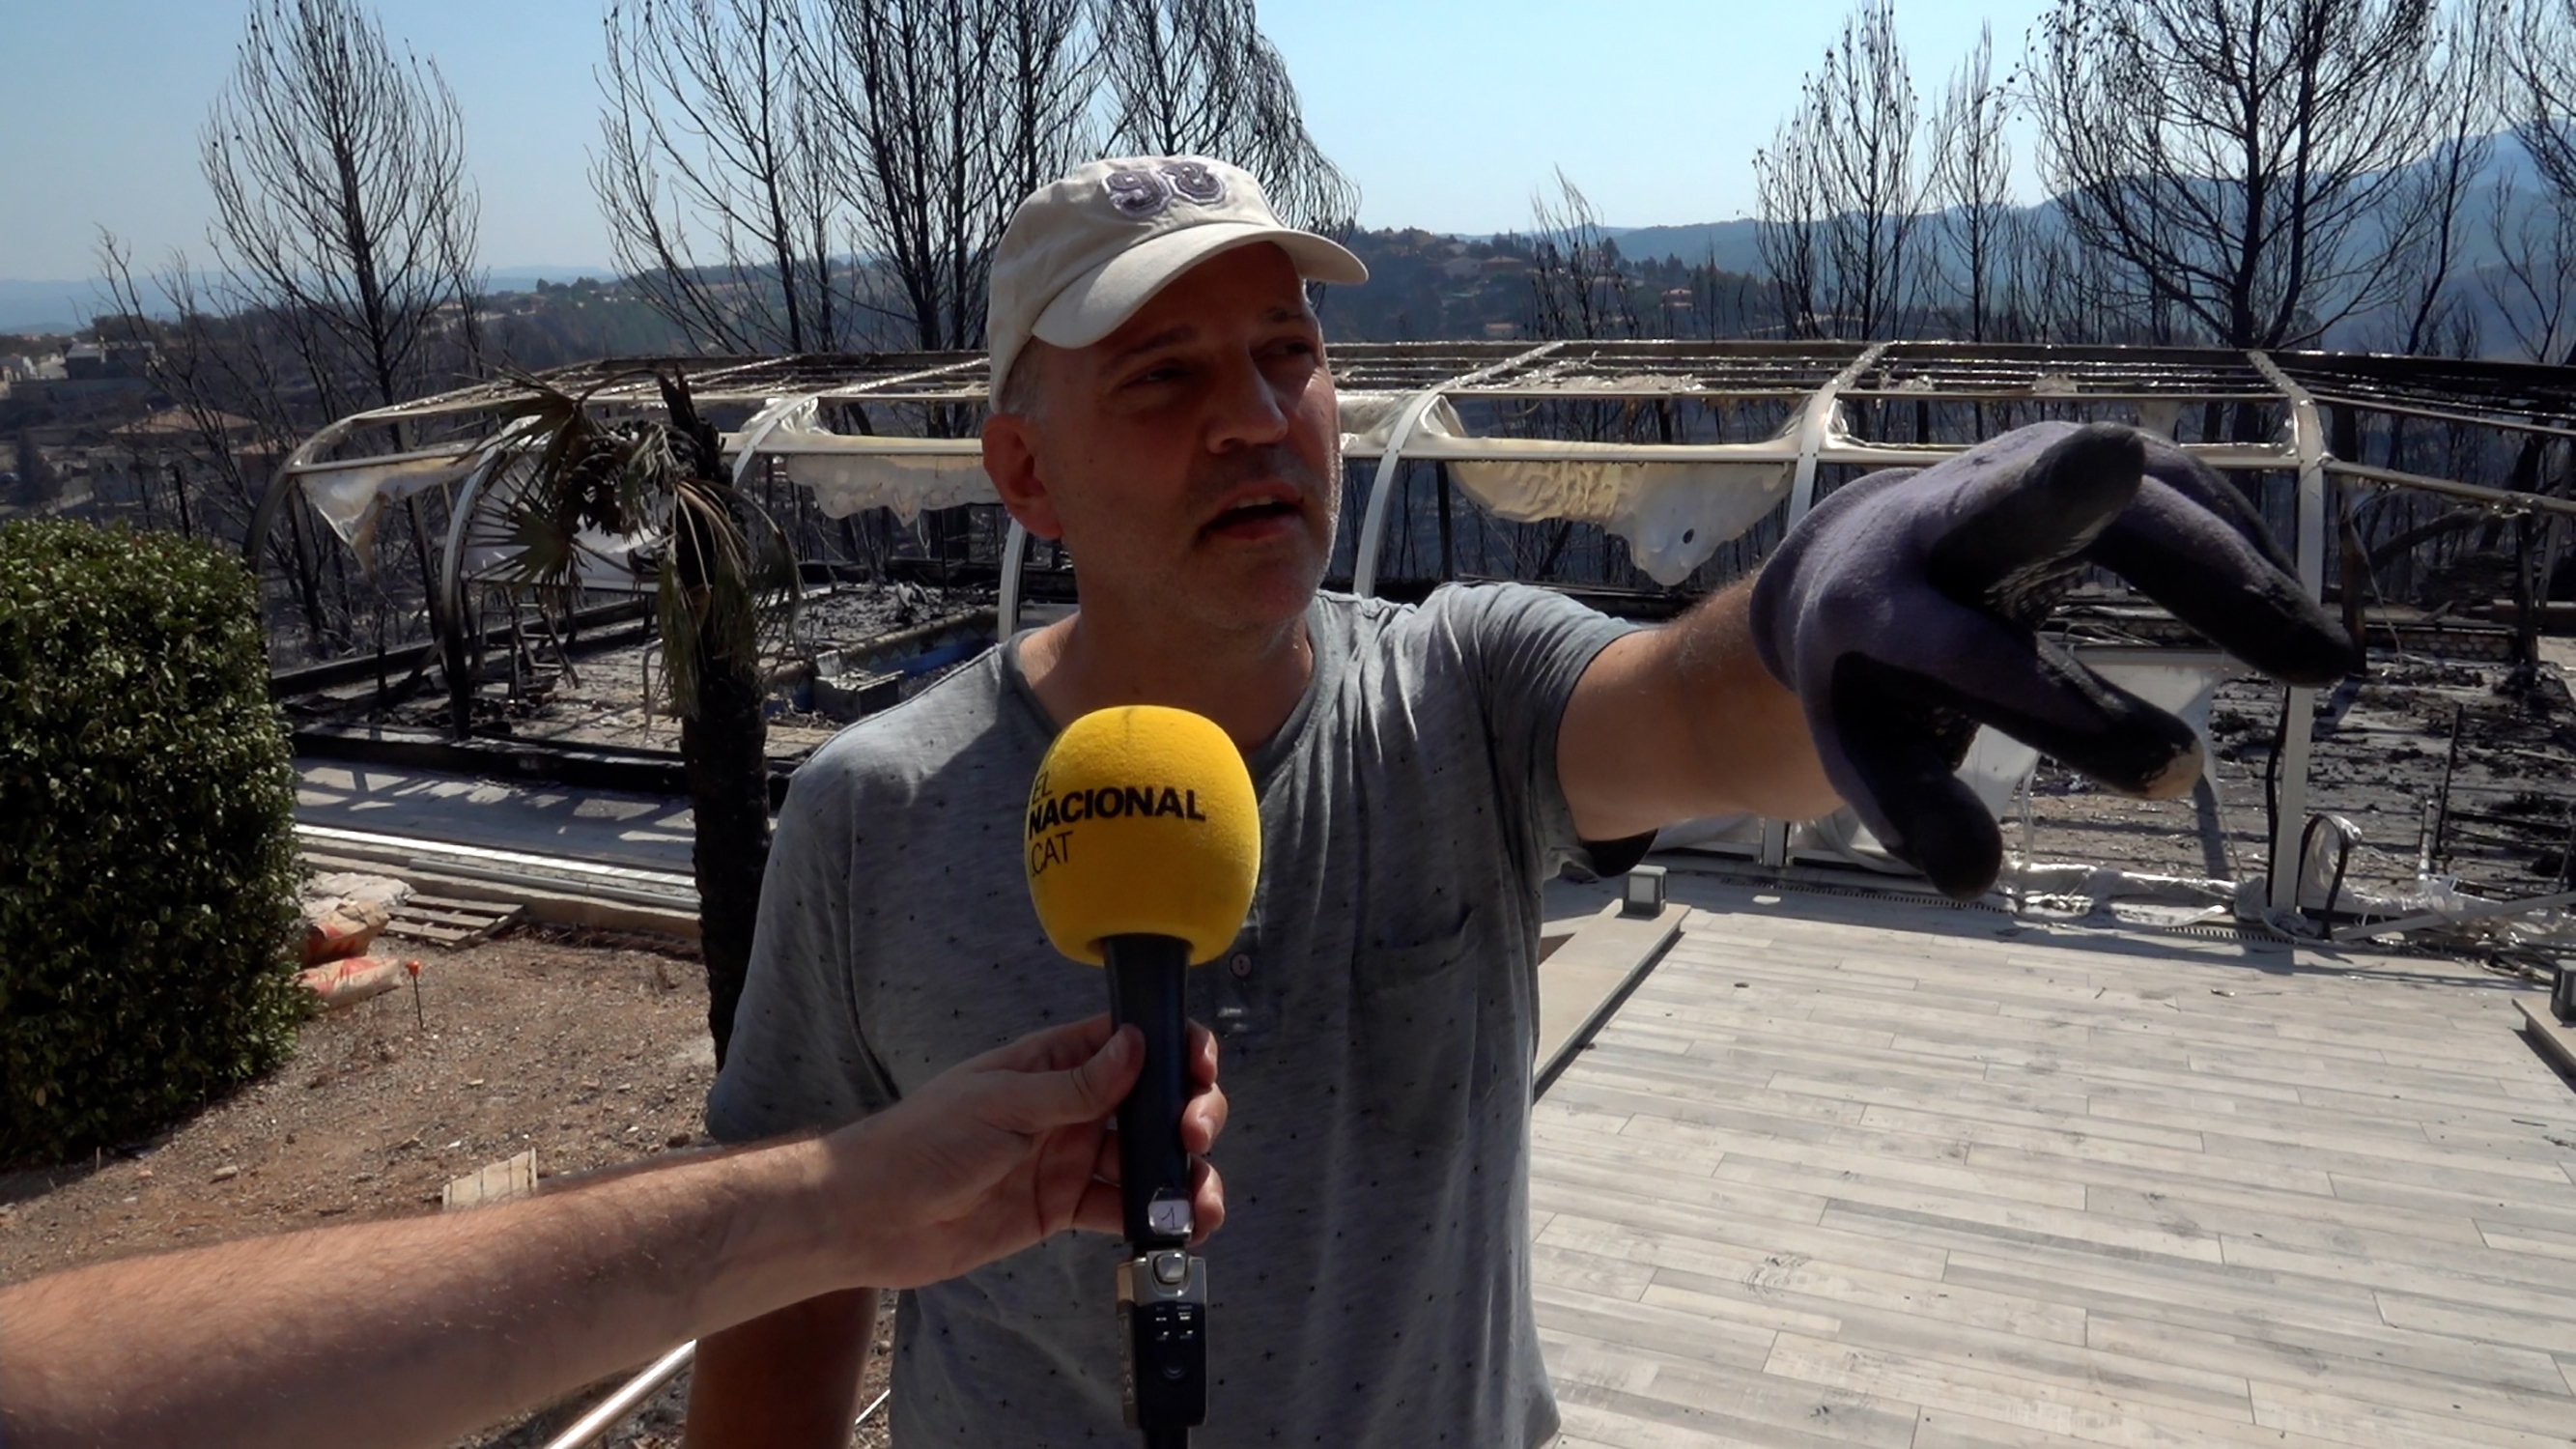 Jaume, uno de los vecinos atrapados en el incendio de El Pont de Vilomara: "El fuego me rodeó" | VÍDEO